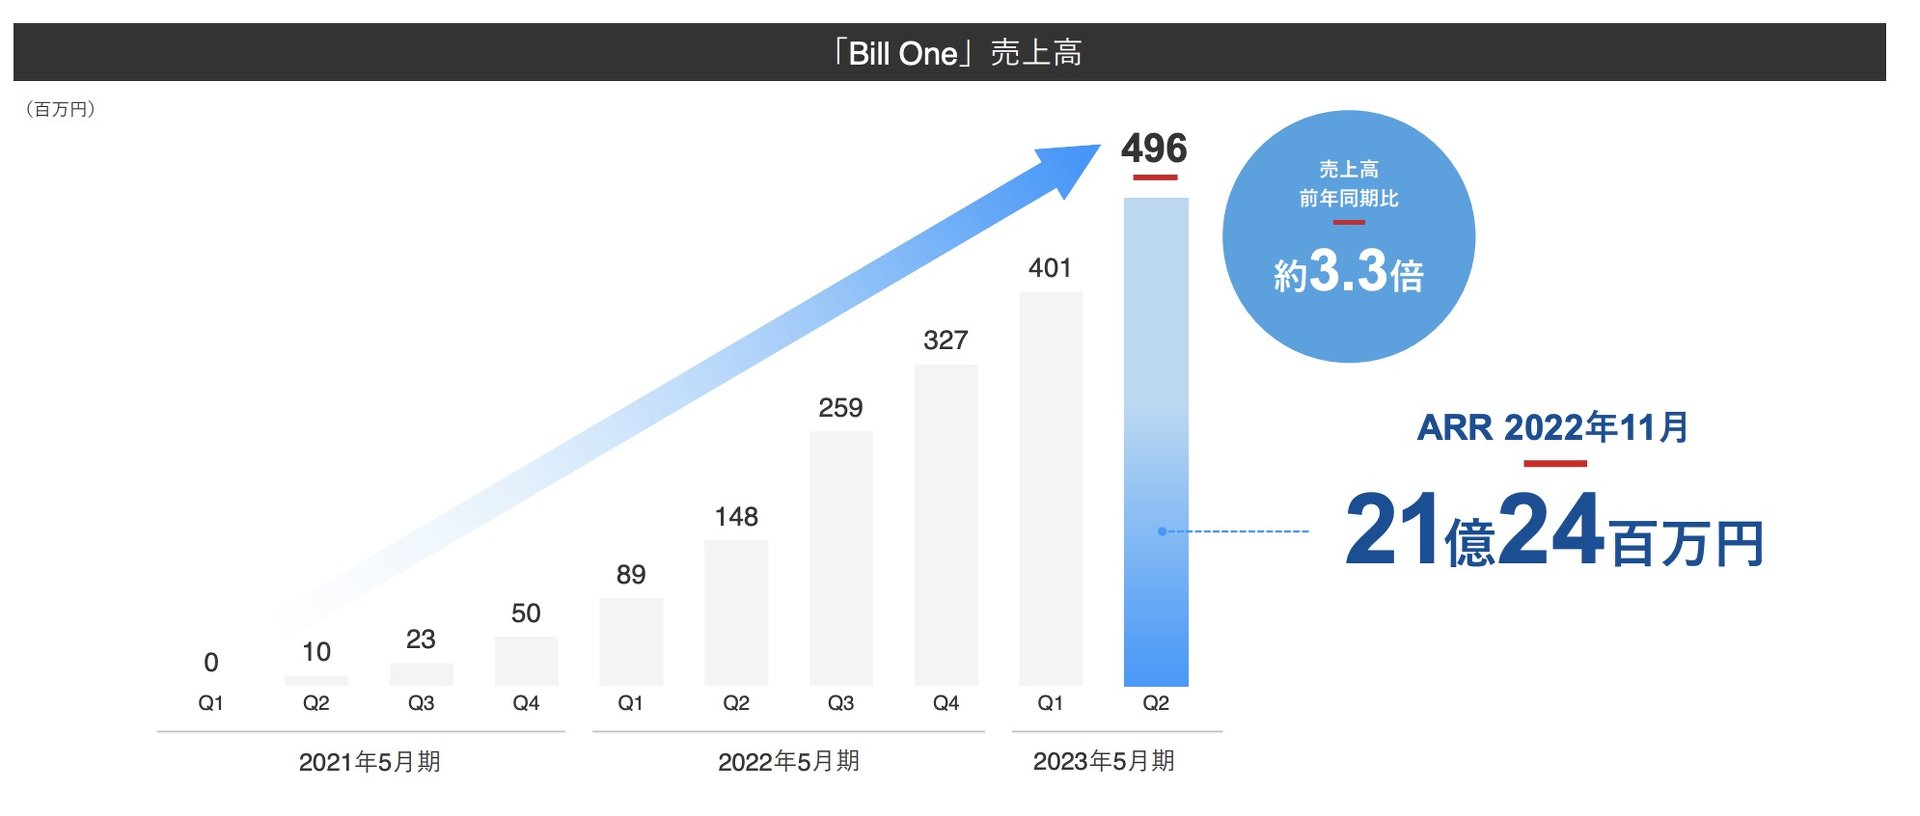 インボイス管理の「Bill One」好調　中堅・大企業フォーカスでARRが3.3倍の21億円超え